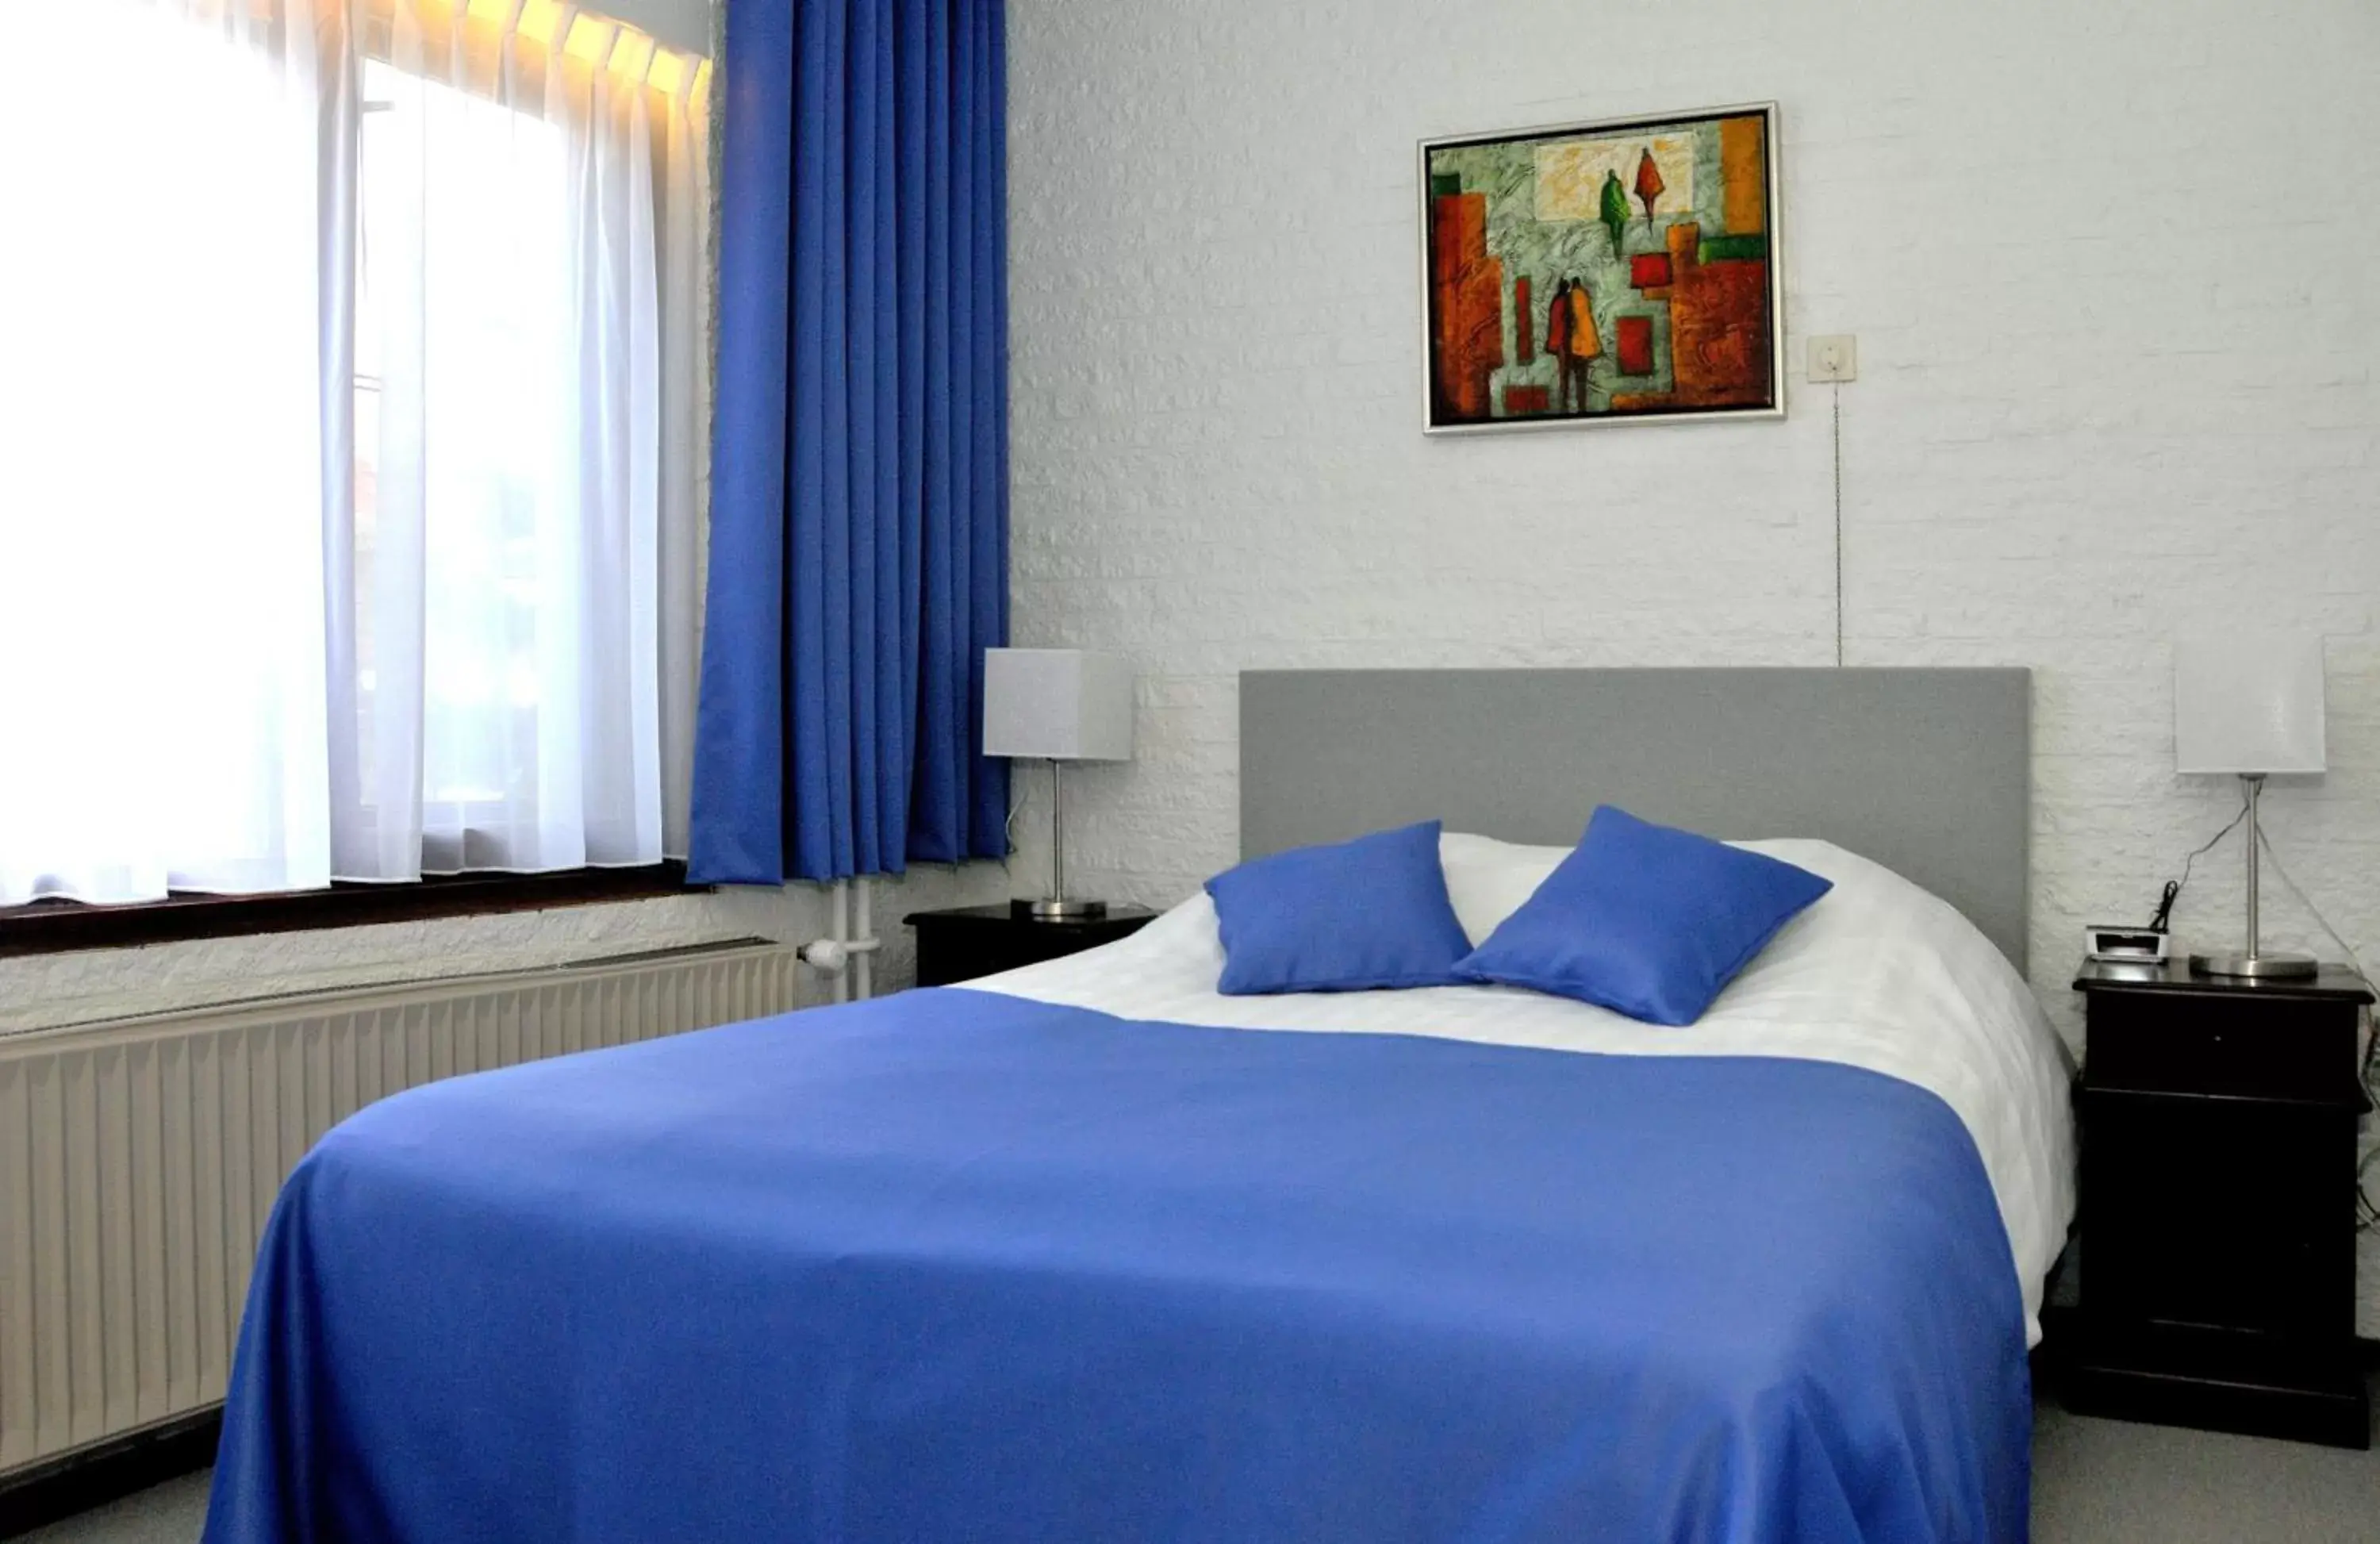 Bed, Room Photo in Hotel Dordrecht